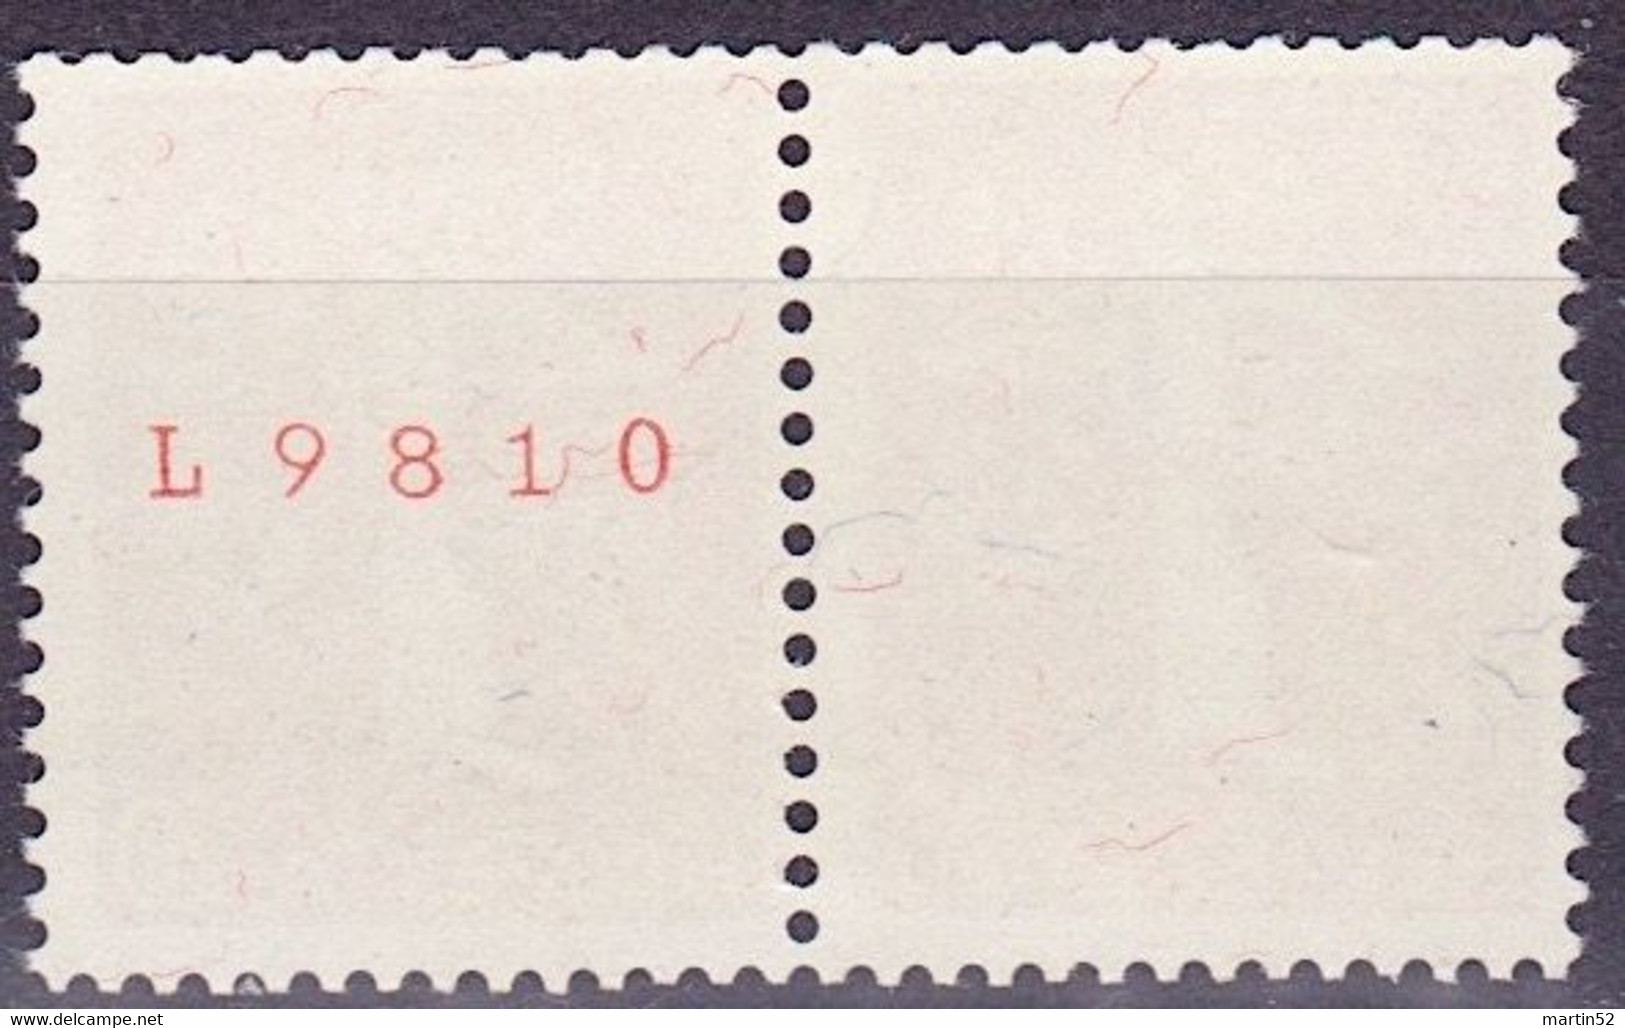 Schweiz Suisse 1939: Zusammendruck Se-tenant Zu Z27e Mi W21 ** Mit Nr. Avec N° L9810 Postfrisch MNH (Zumstein CHF 30.00) - Coil Stamps